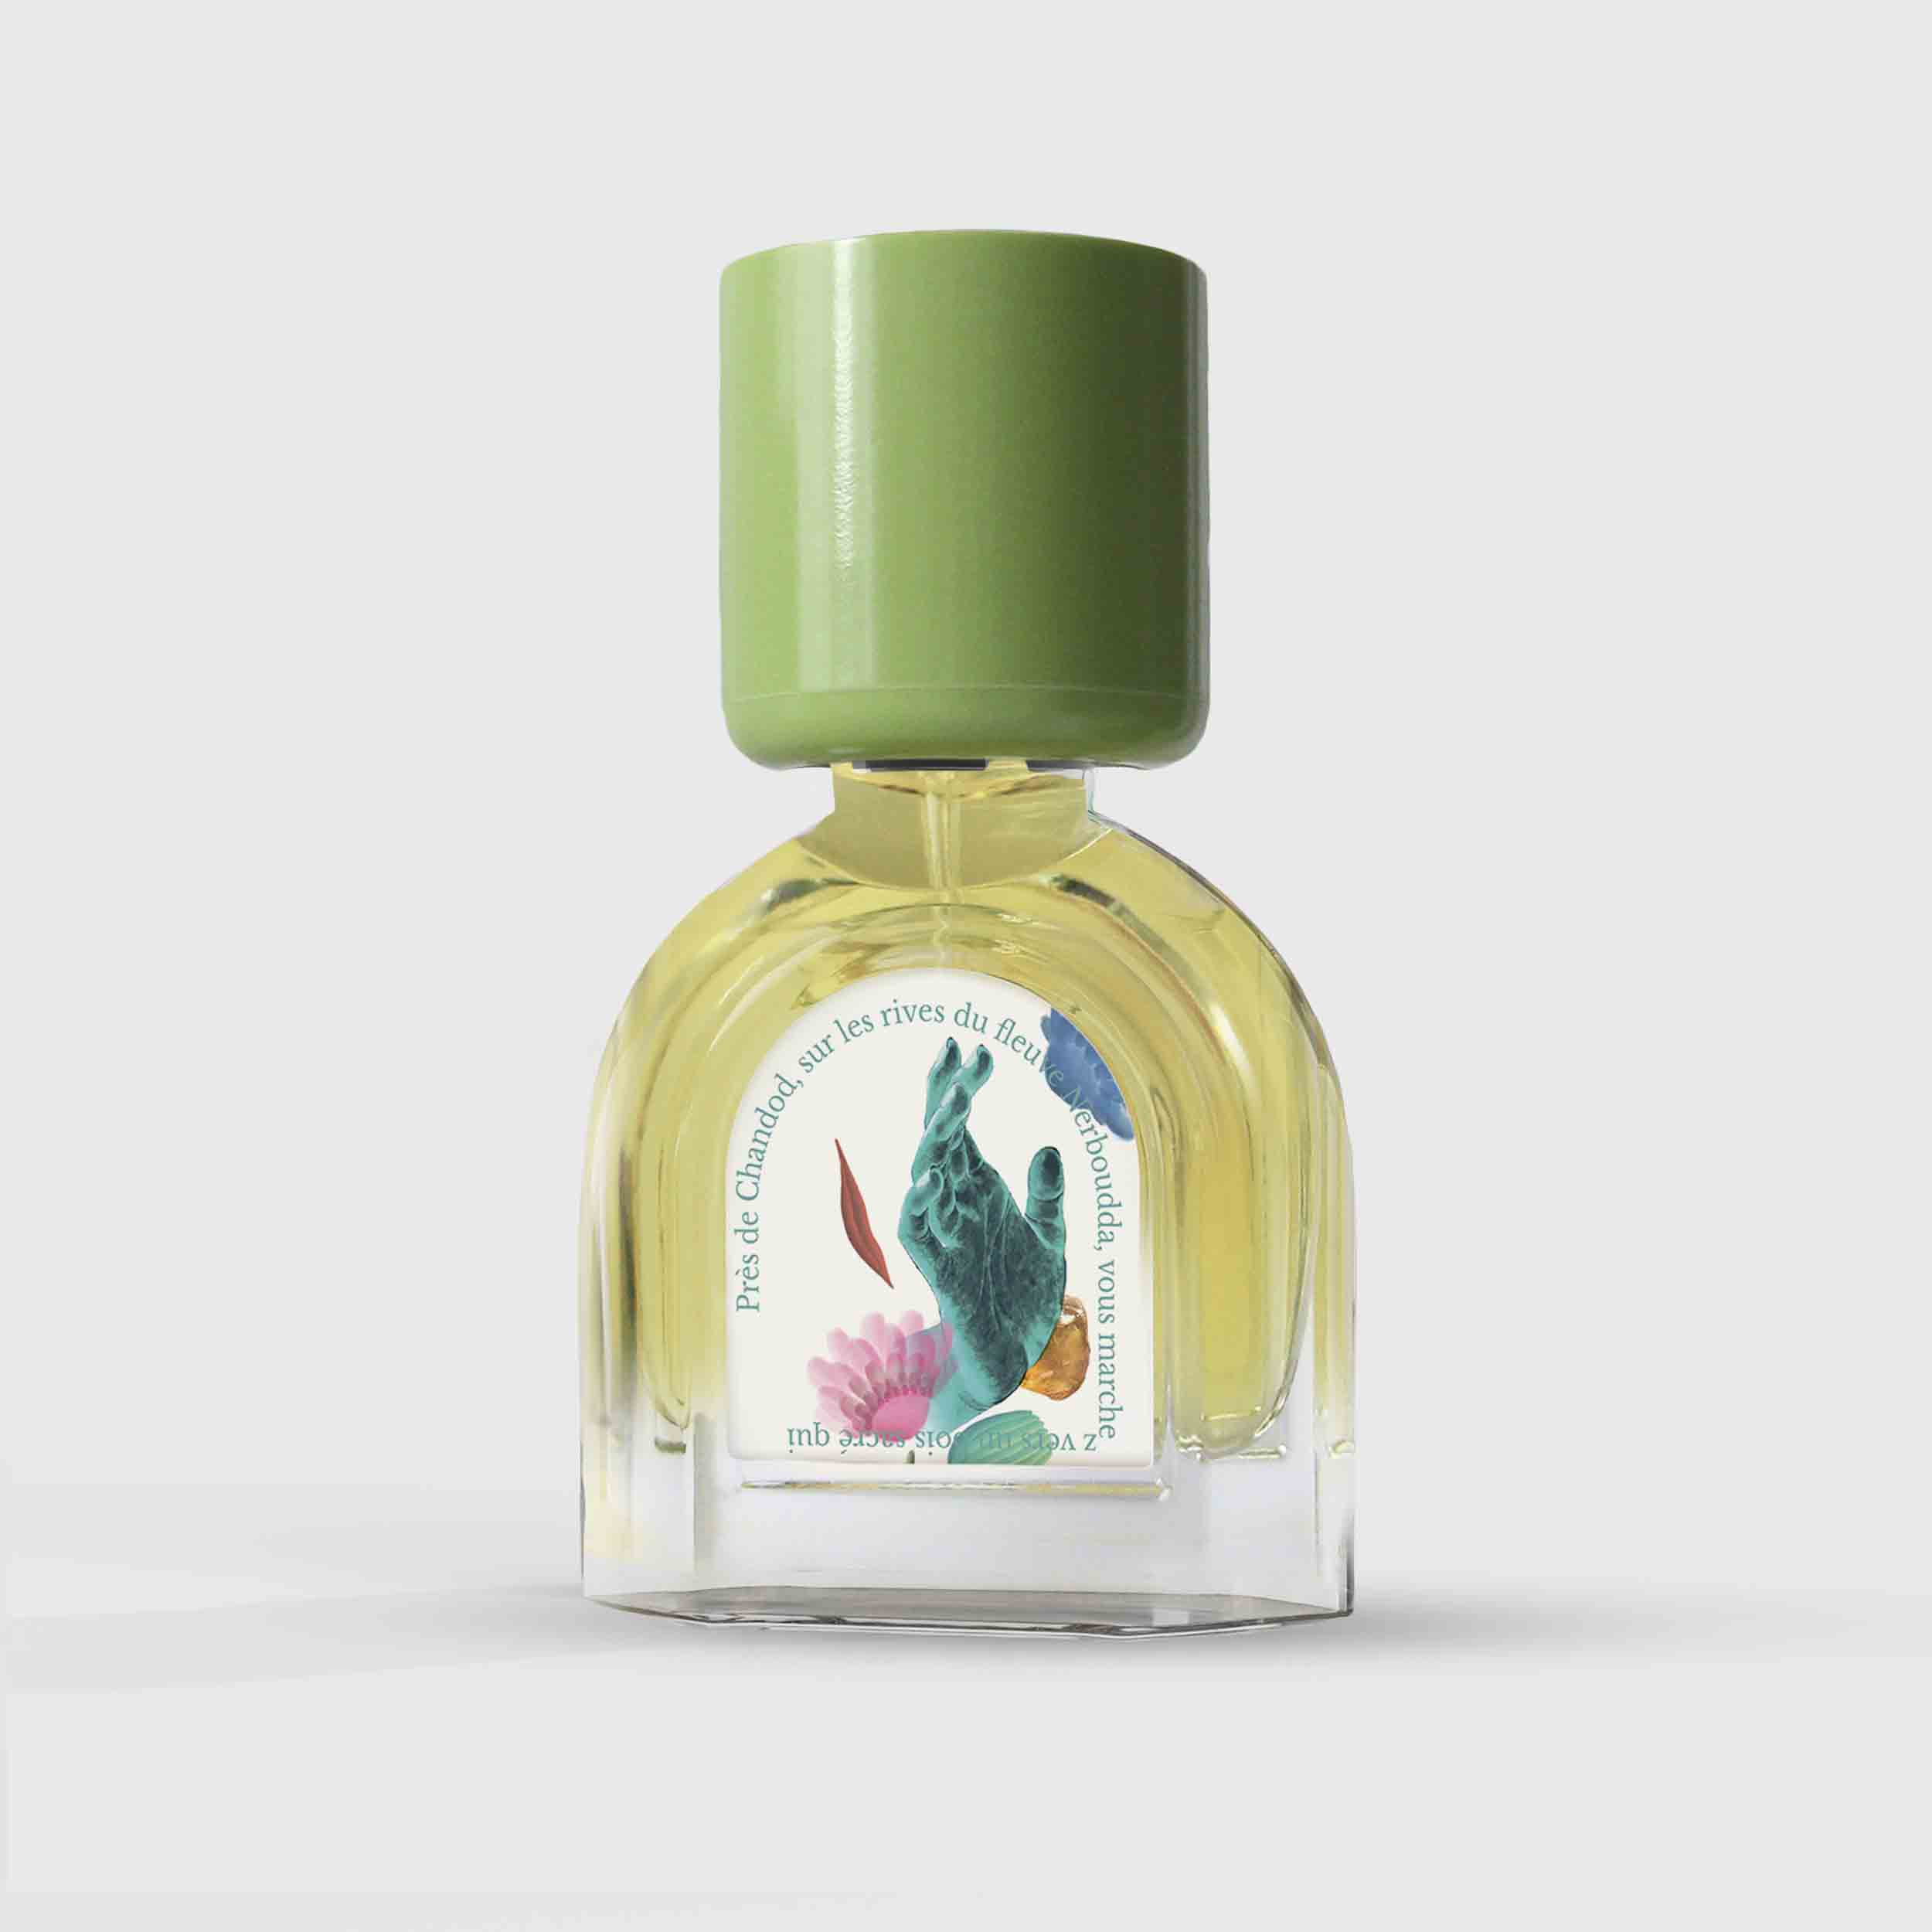 Sandalwood Sacré Eau de Parfum 15ml Bottle by Le Jardin Retrouvé